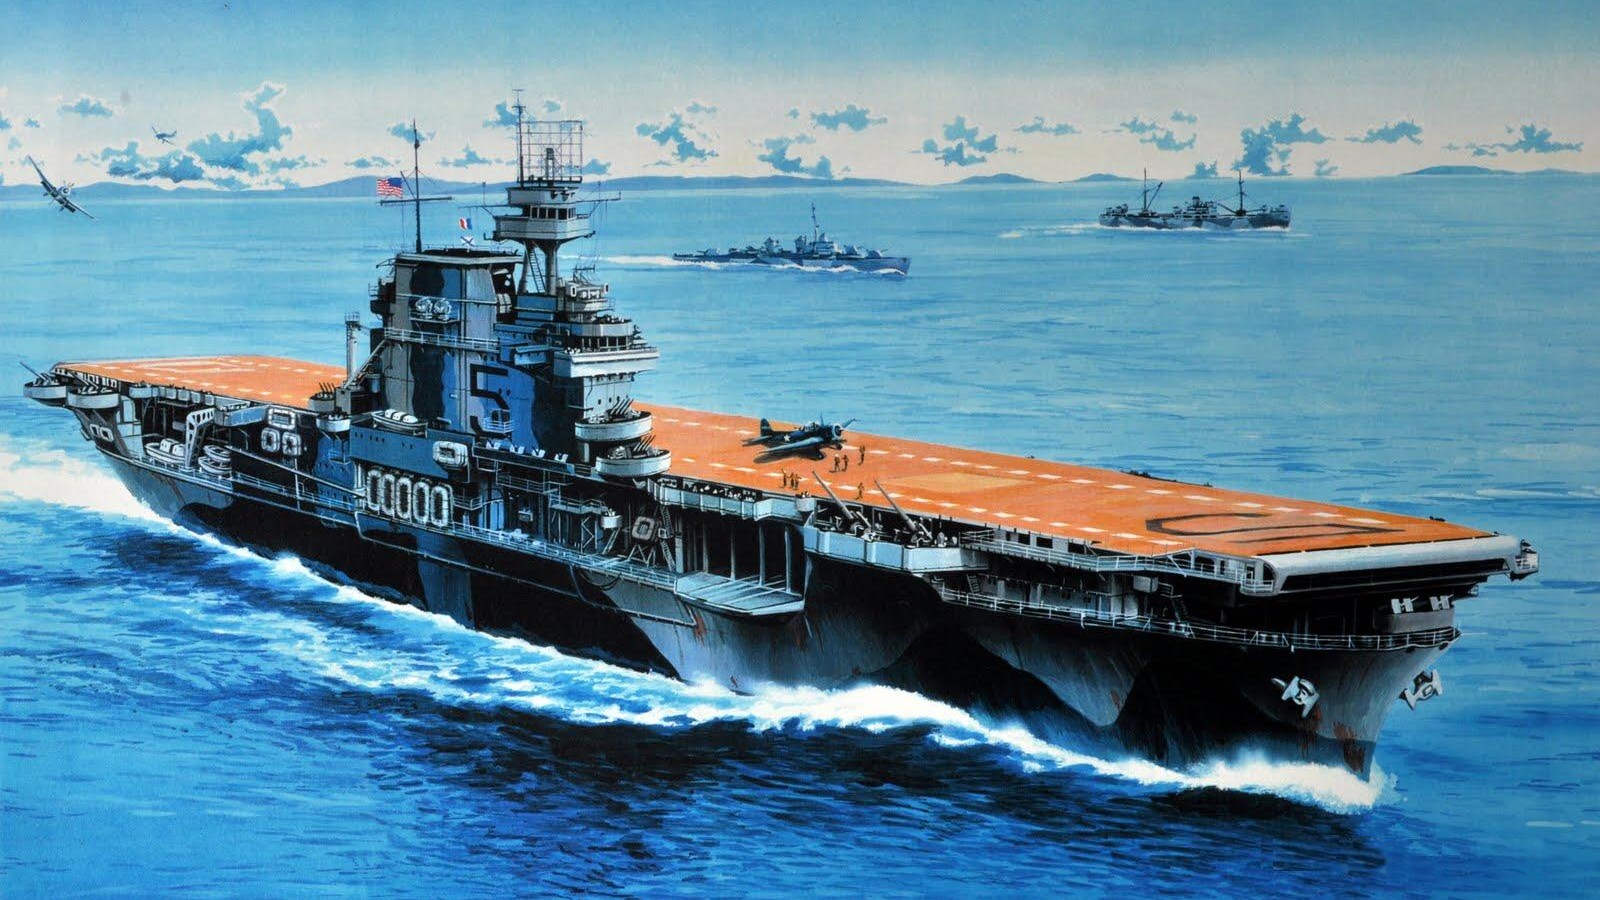 USS Yorktown (CV-5) Backgrounds, Compatible - PC, Mobile, Gadgets| 1600x900 px